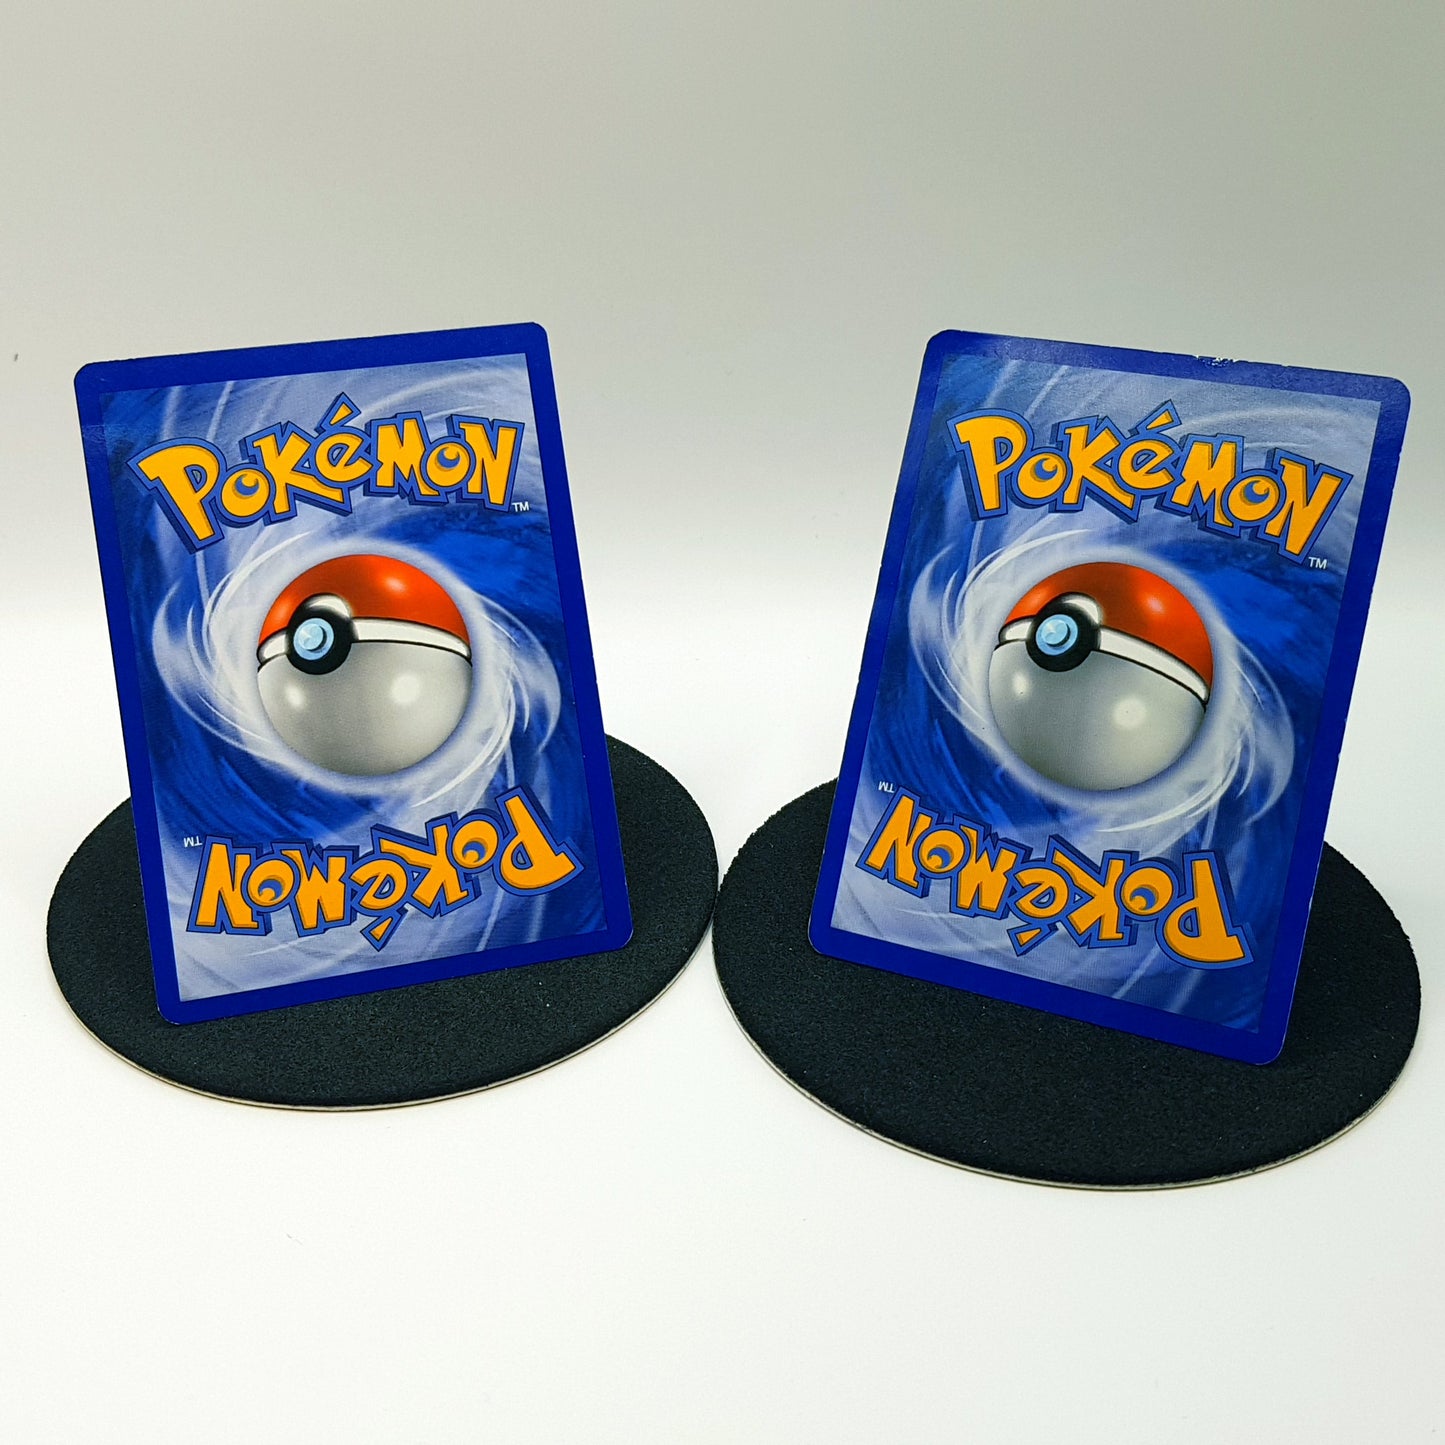 Pokemonkarten - Togepi 88/106 (2008) & Togetic 39/90 (2010)